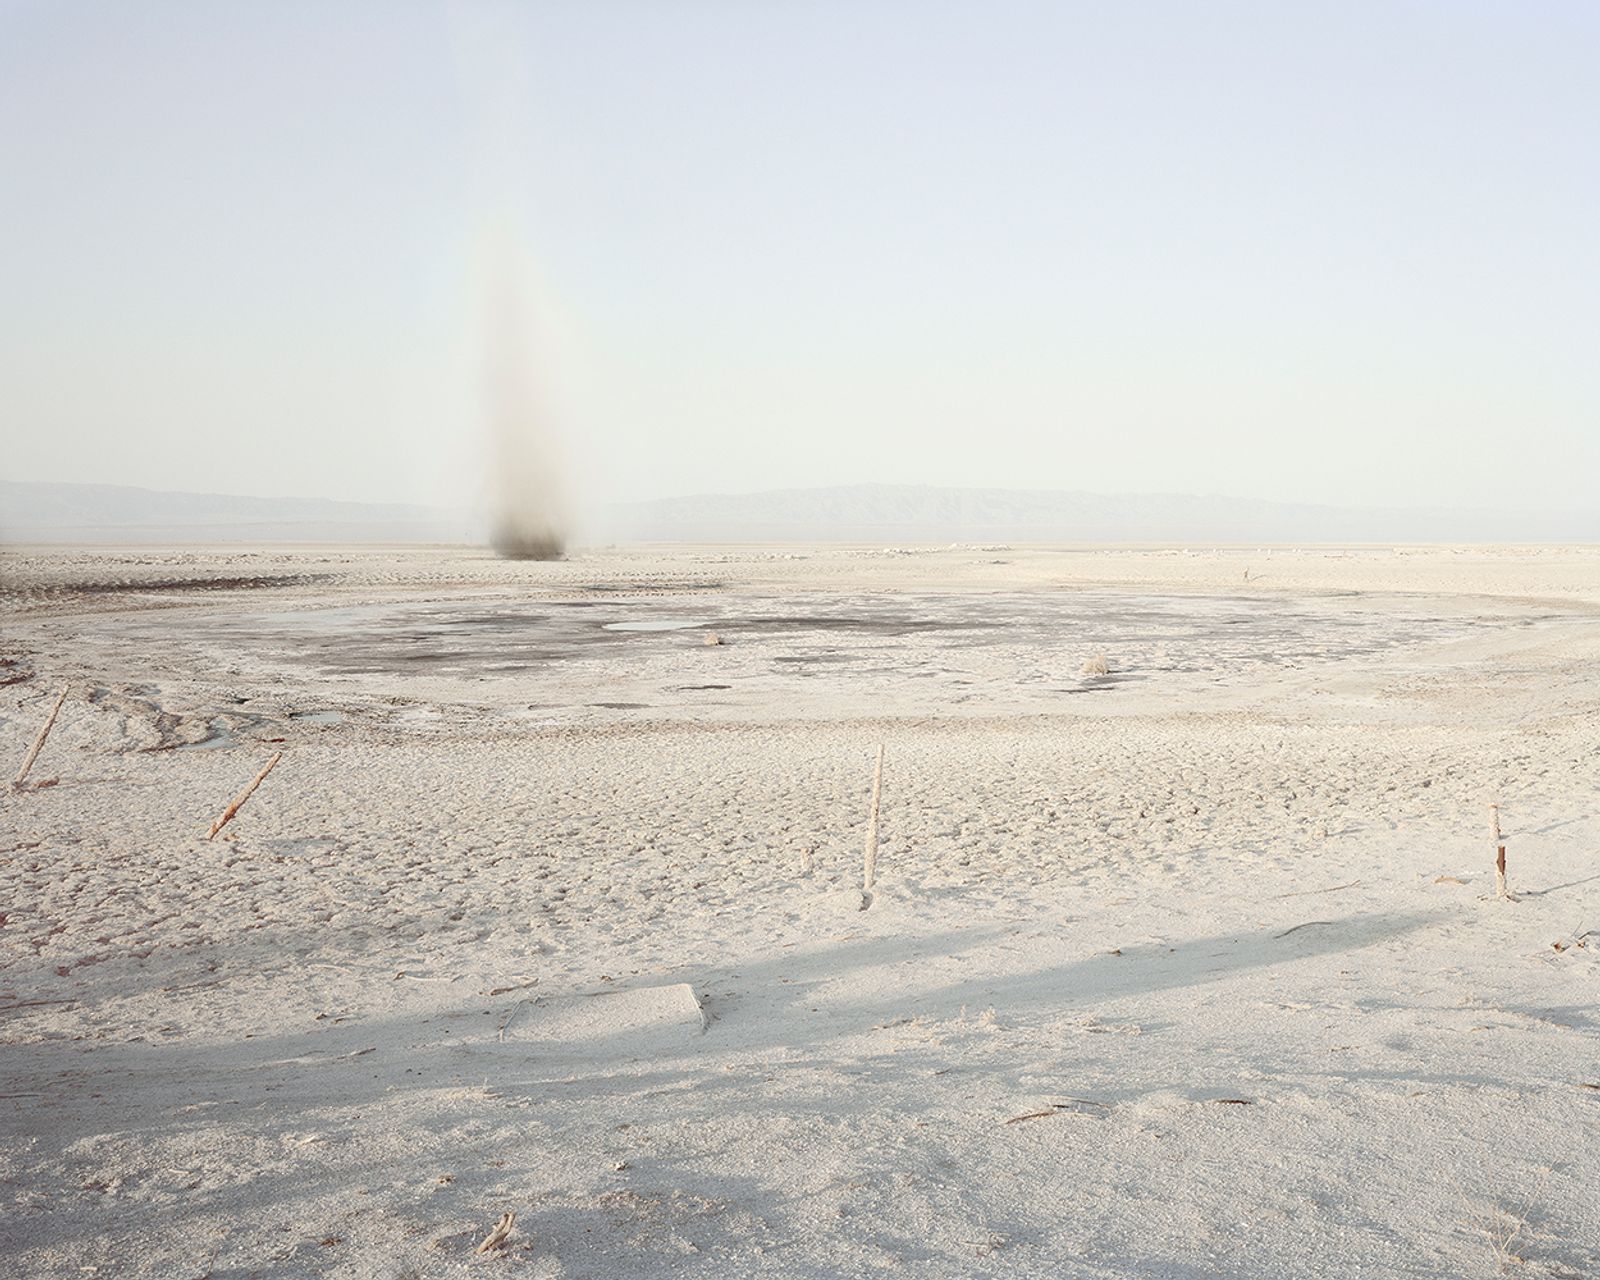 © Antone  Dolezal - Dust Devil, Salton Sea, California